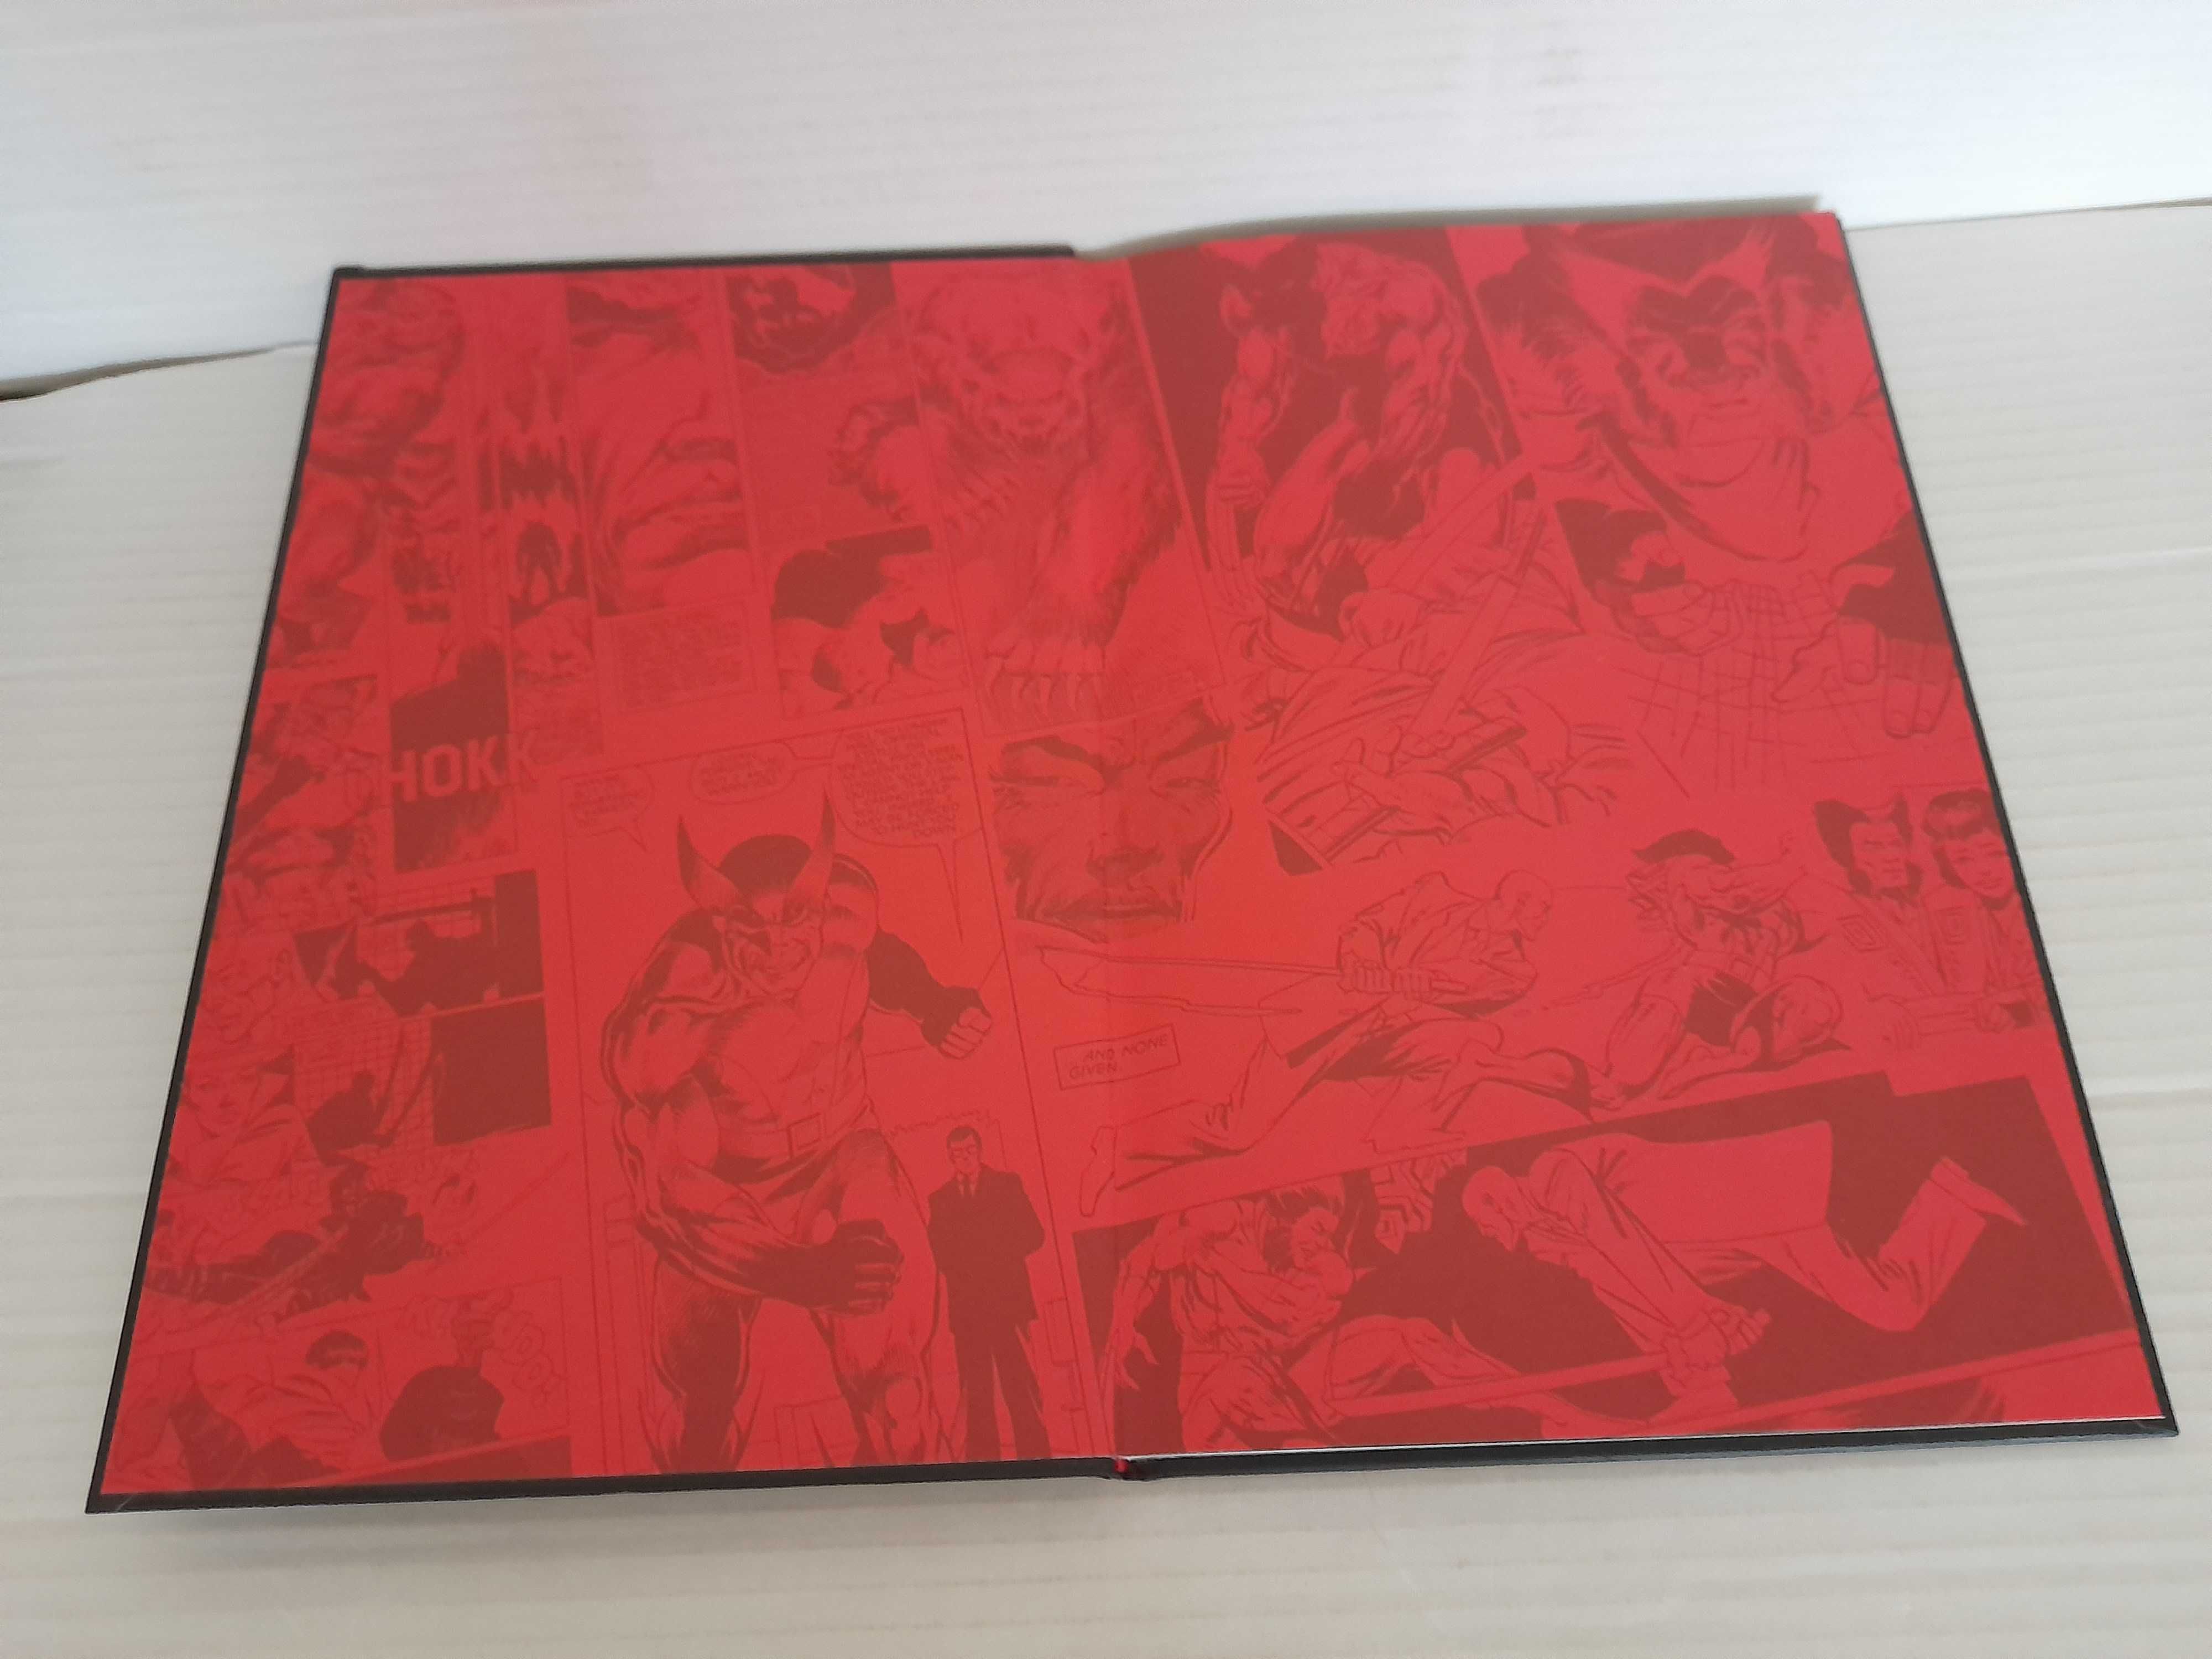 Wielka Kolekcja Komiksów Marvela tom 4 WOLVERINE Hachette Idealny !!